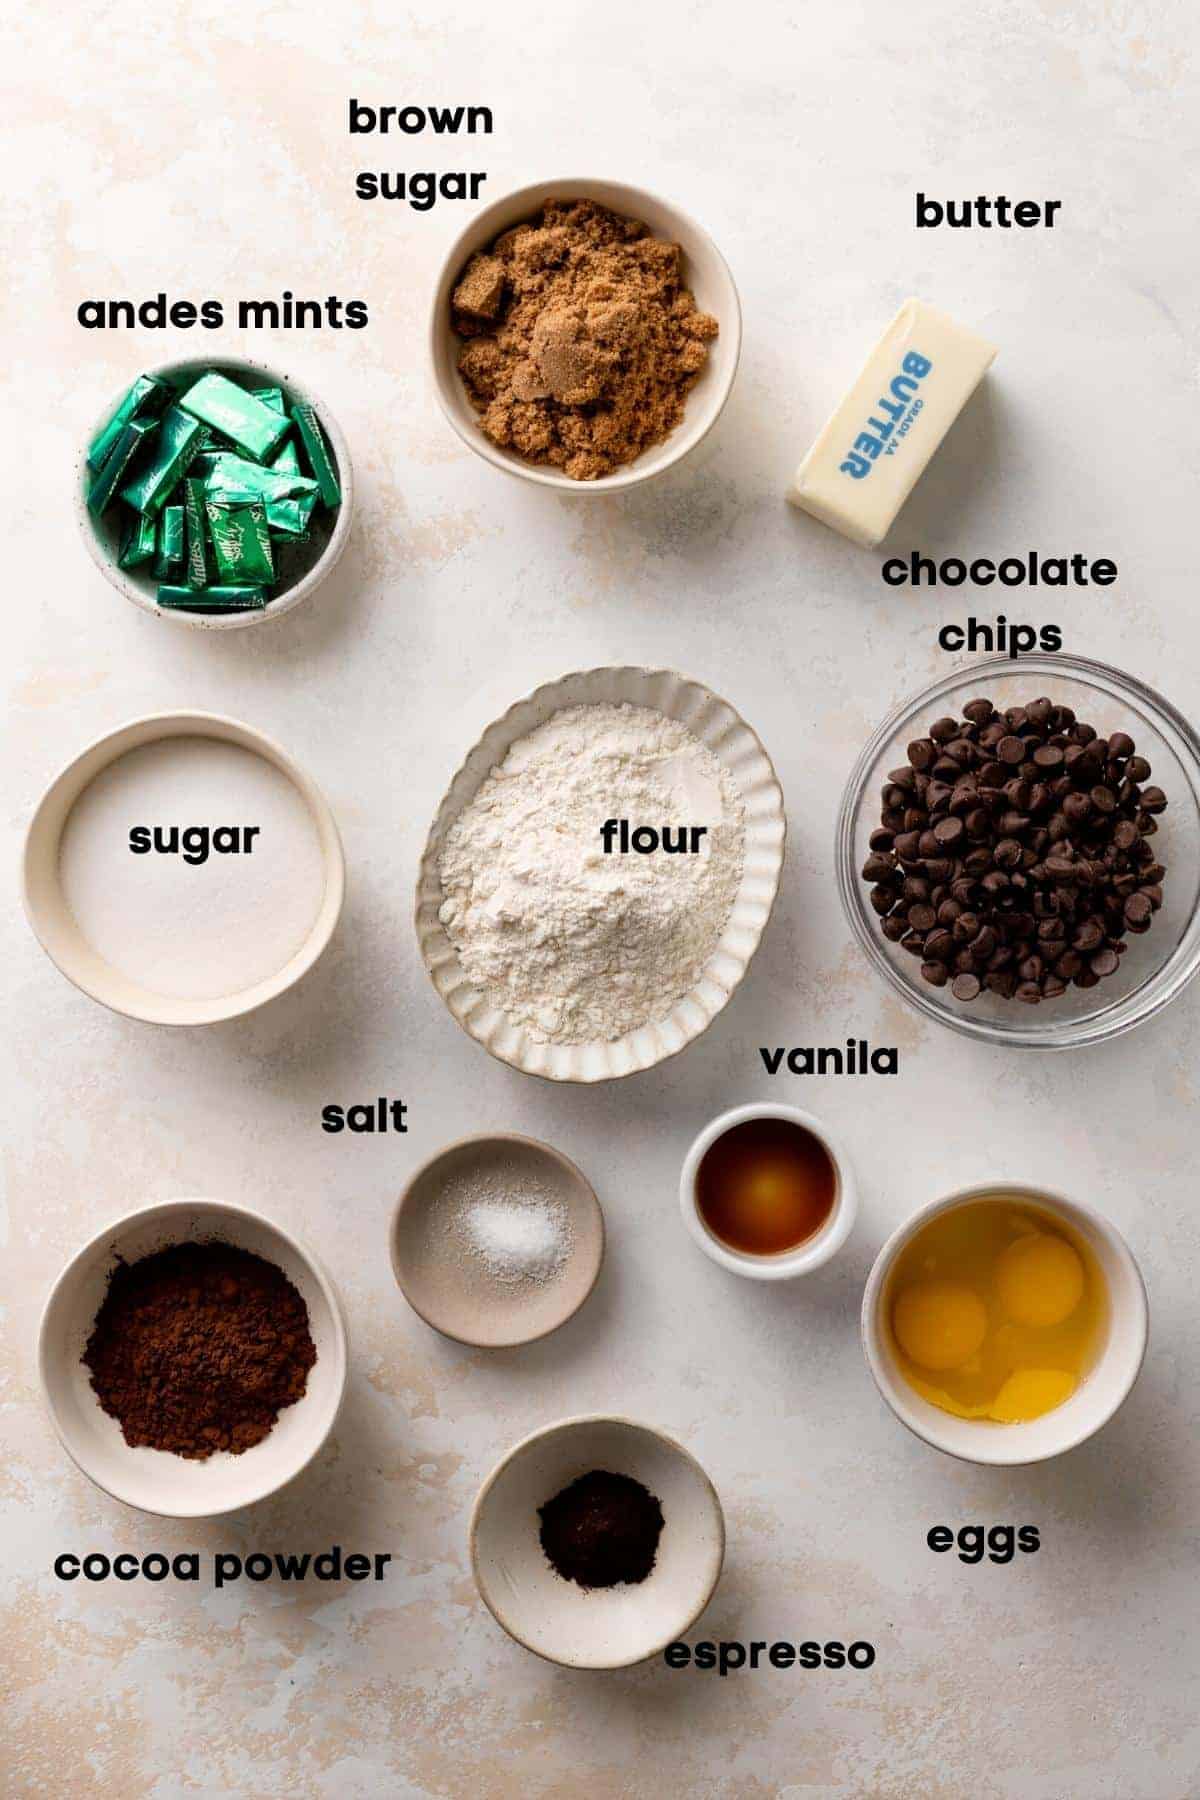 ingredients needed to make andes mint brownies.